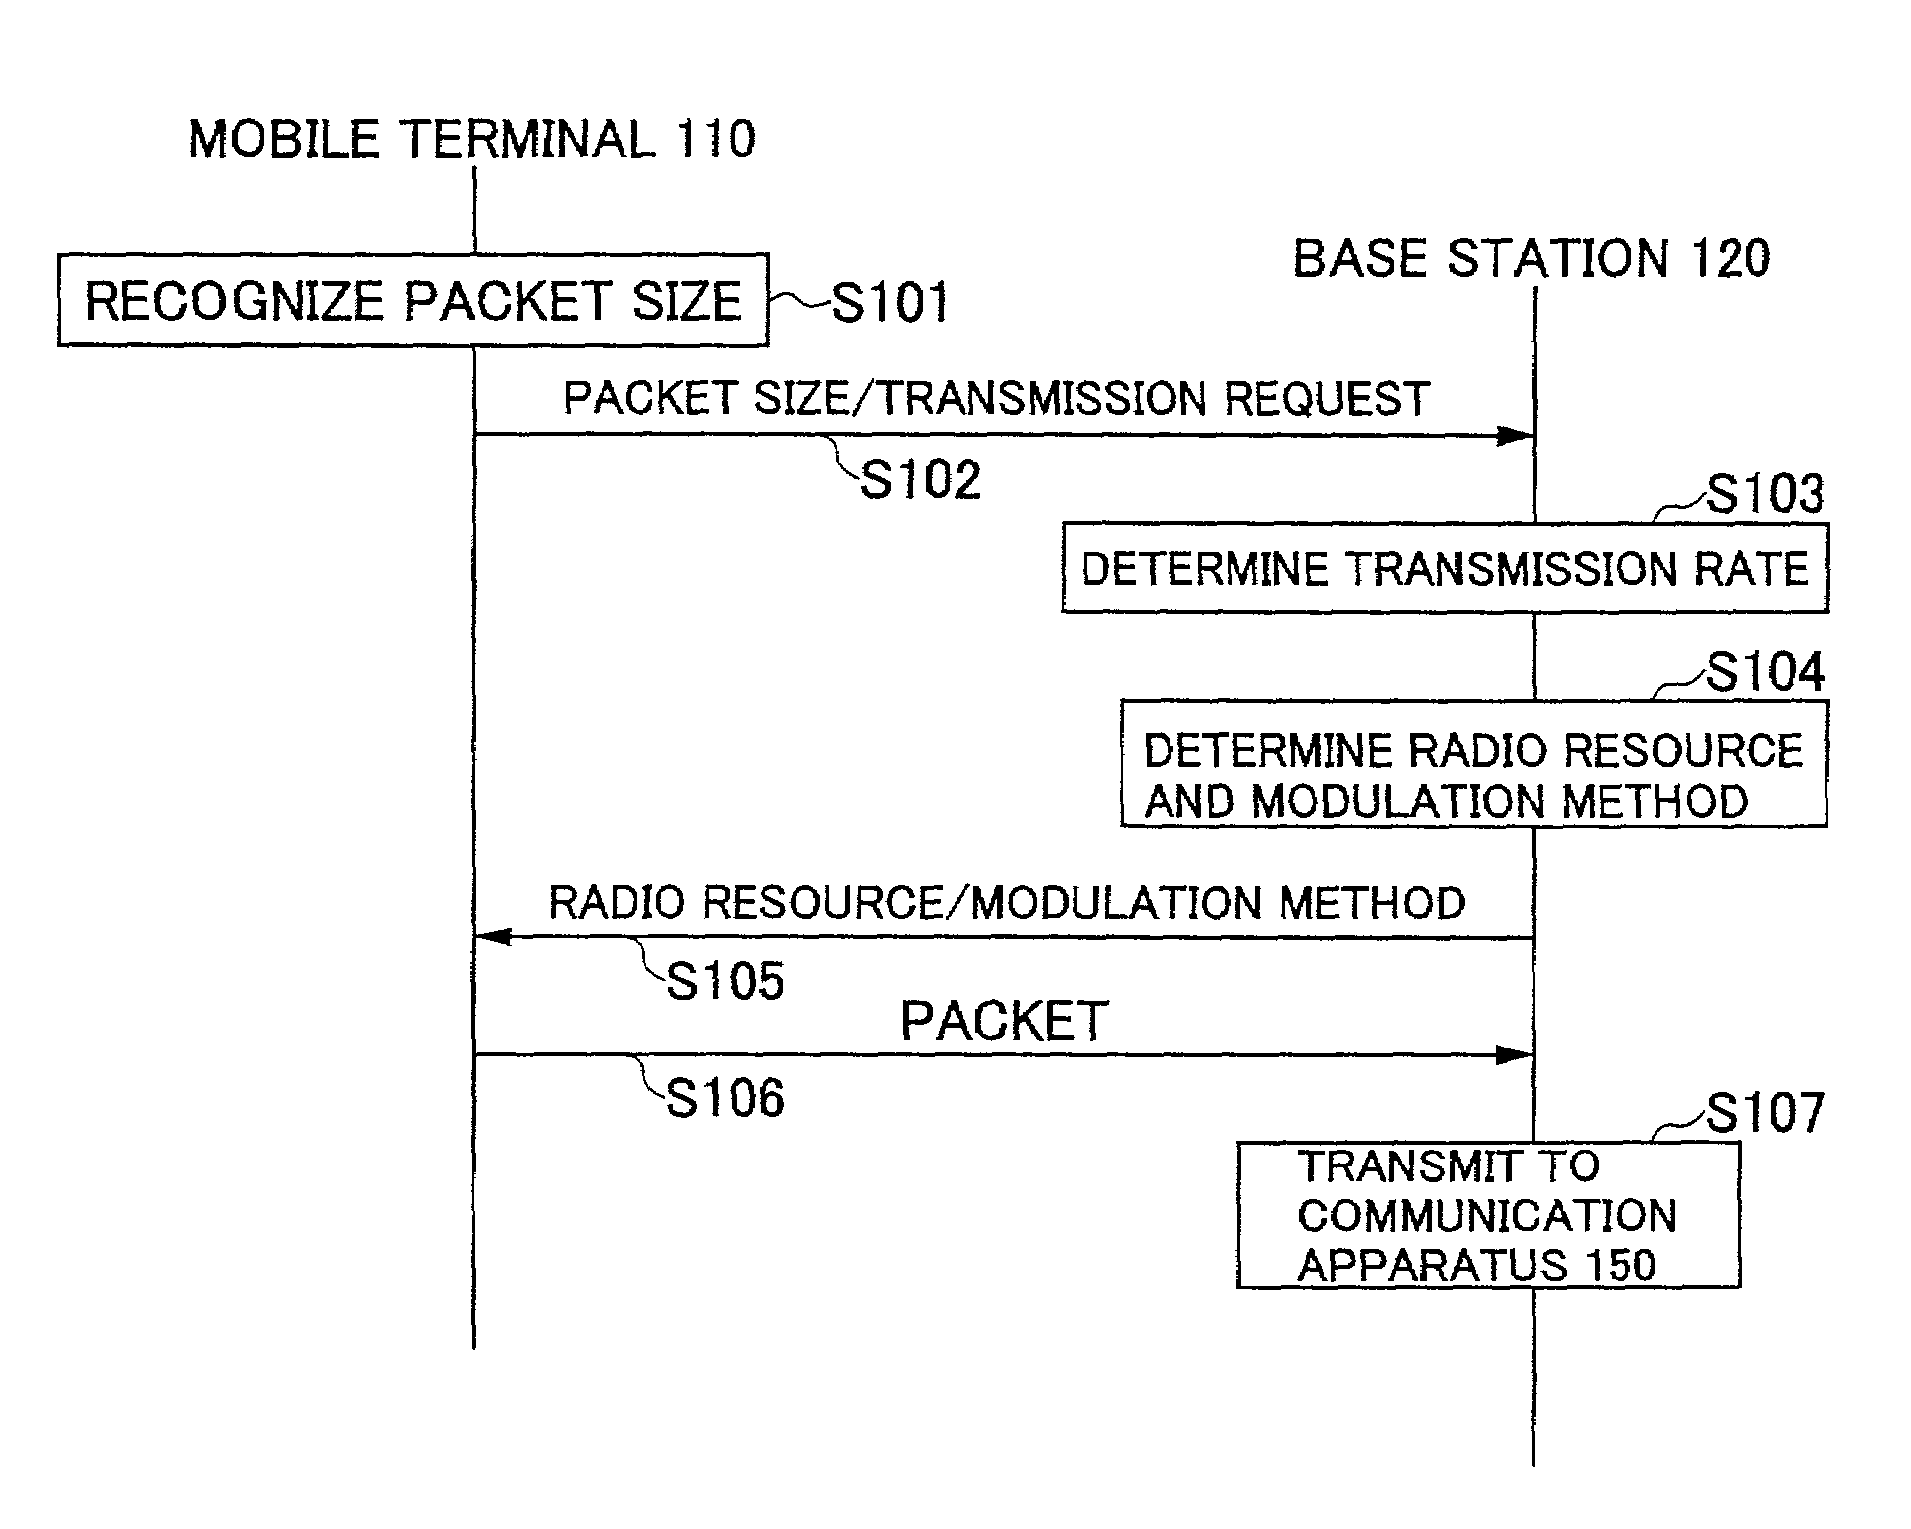 Packet transmission method, base station and mobile station